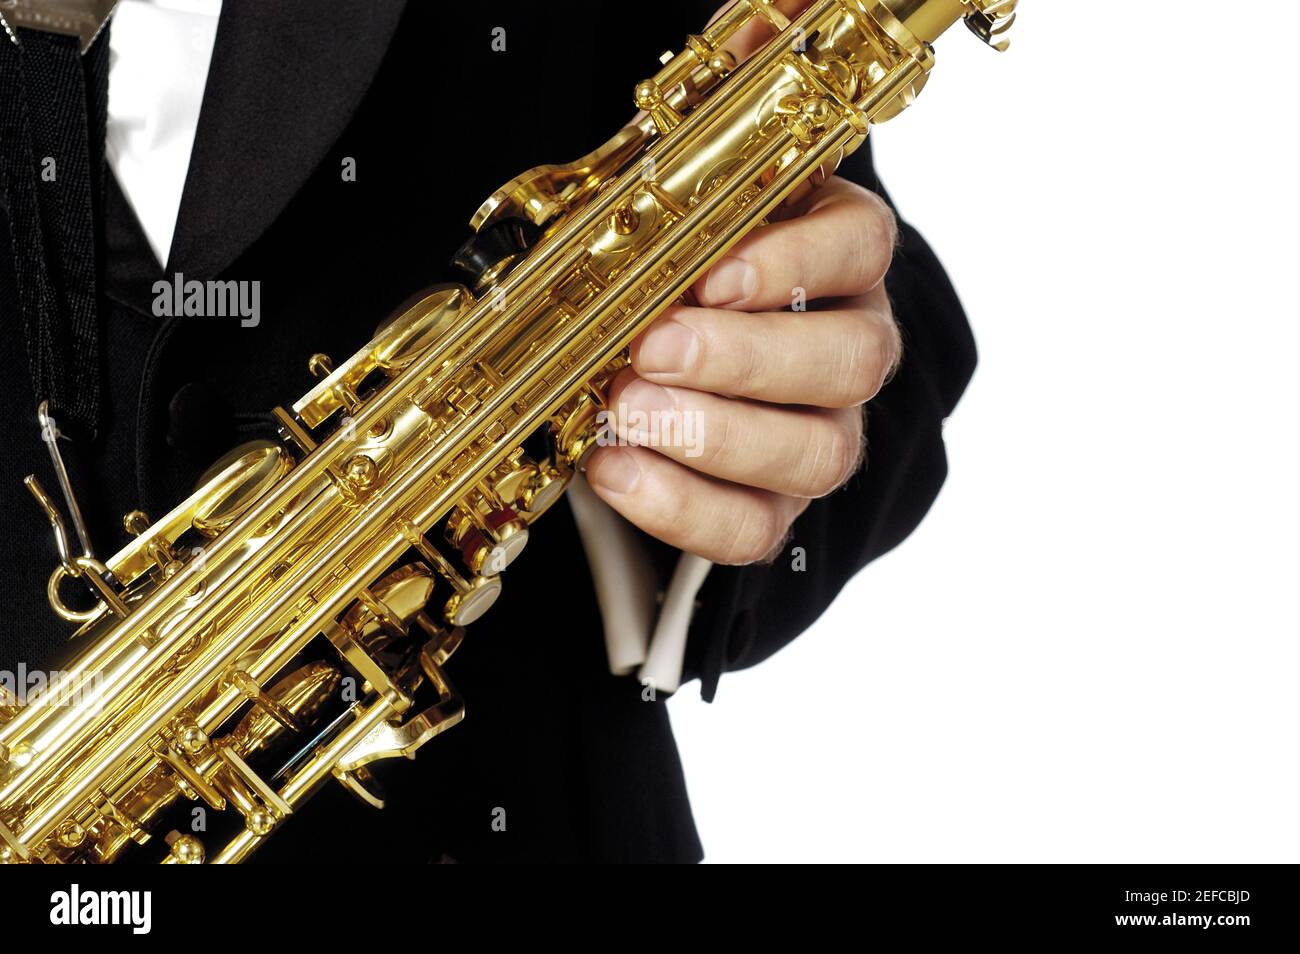 Vue en coupe d'un musicien tenant un saxophone Banque D'Images